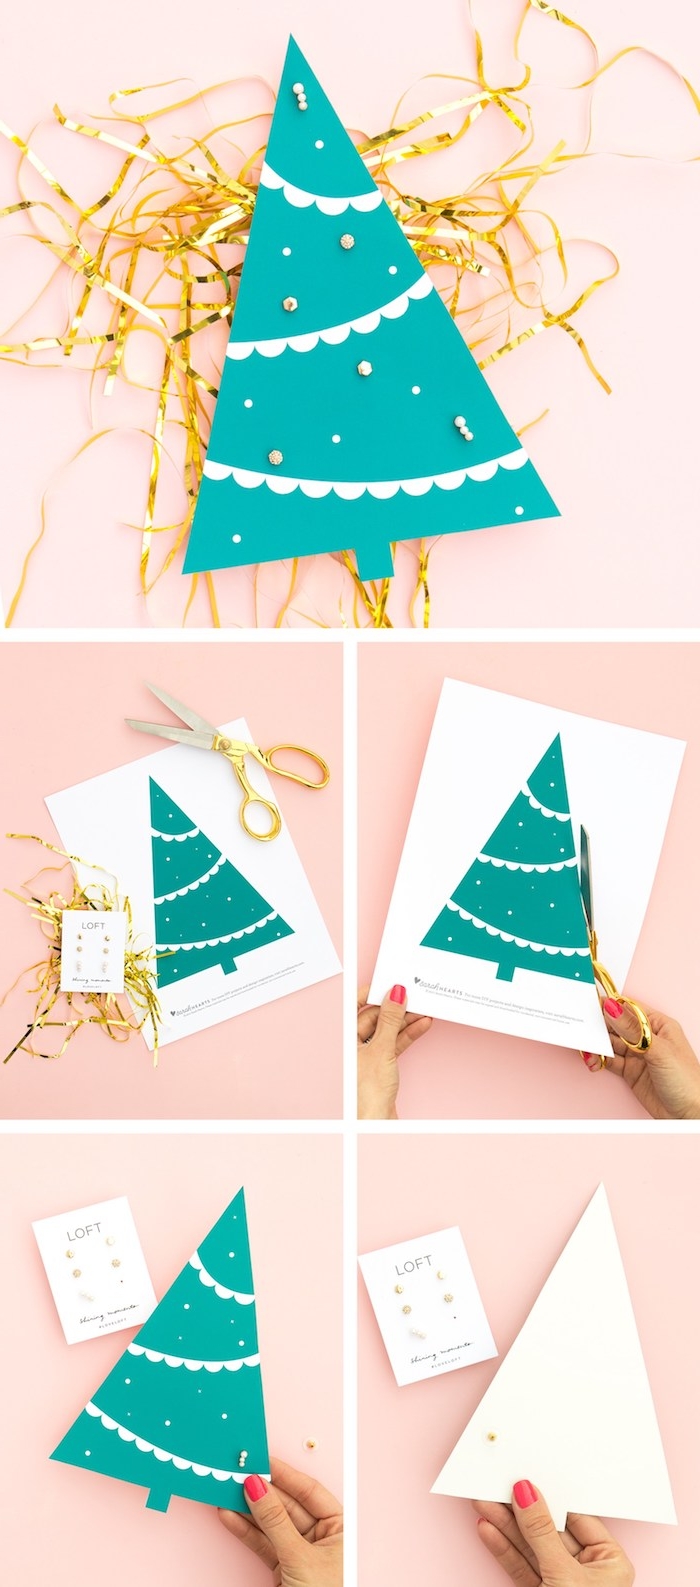 Kleines Christbäumchen aus Papier ausschneiden, Ohrringe darin stechen, tolle Idee für Weihnachtsgeschenk 